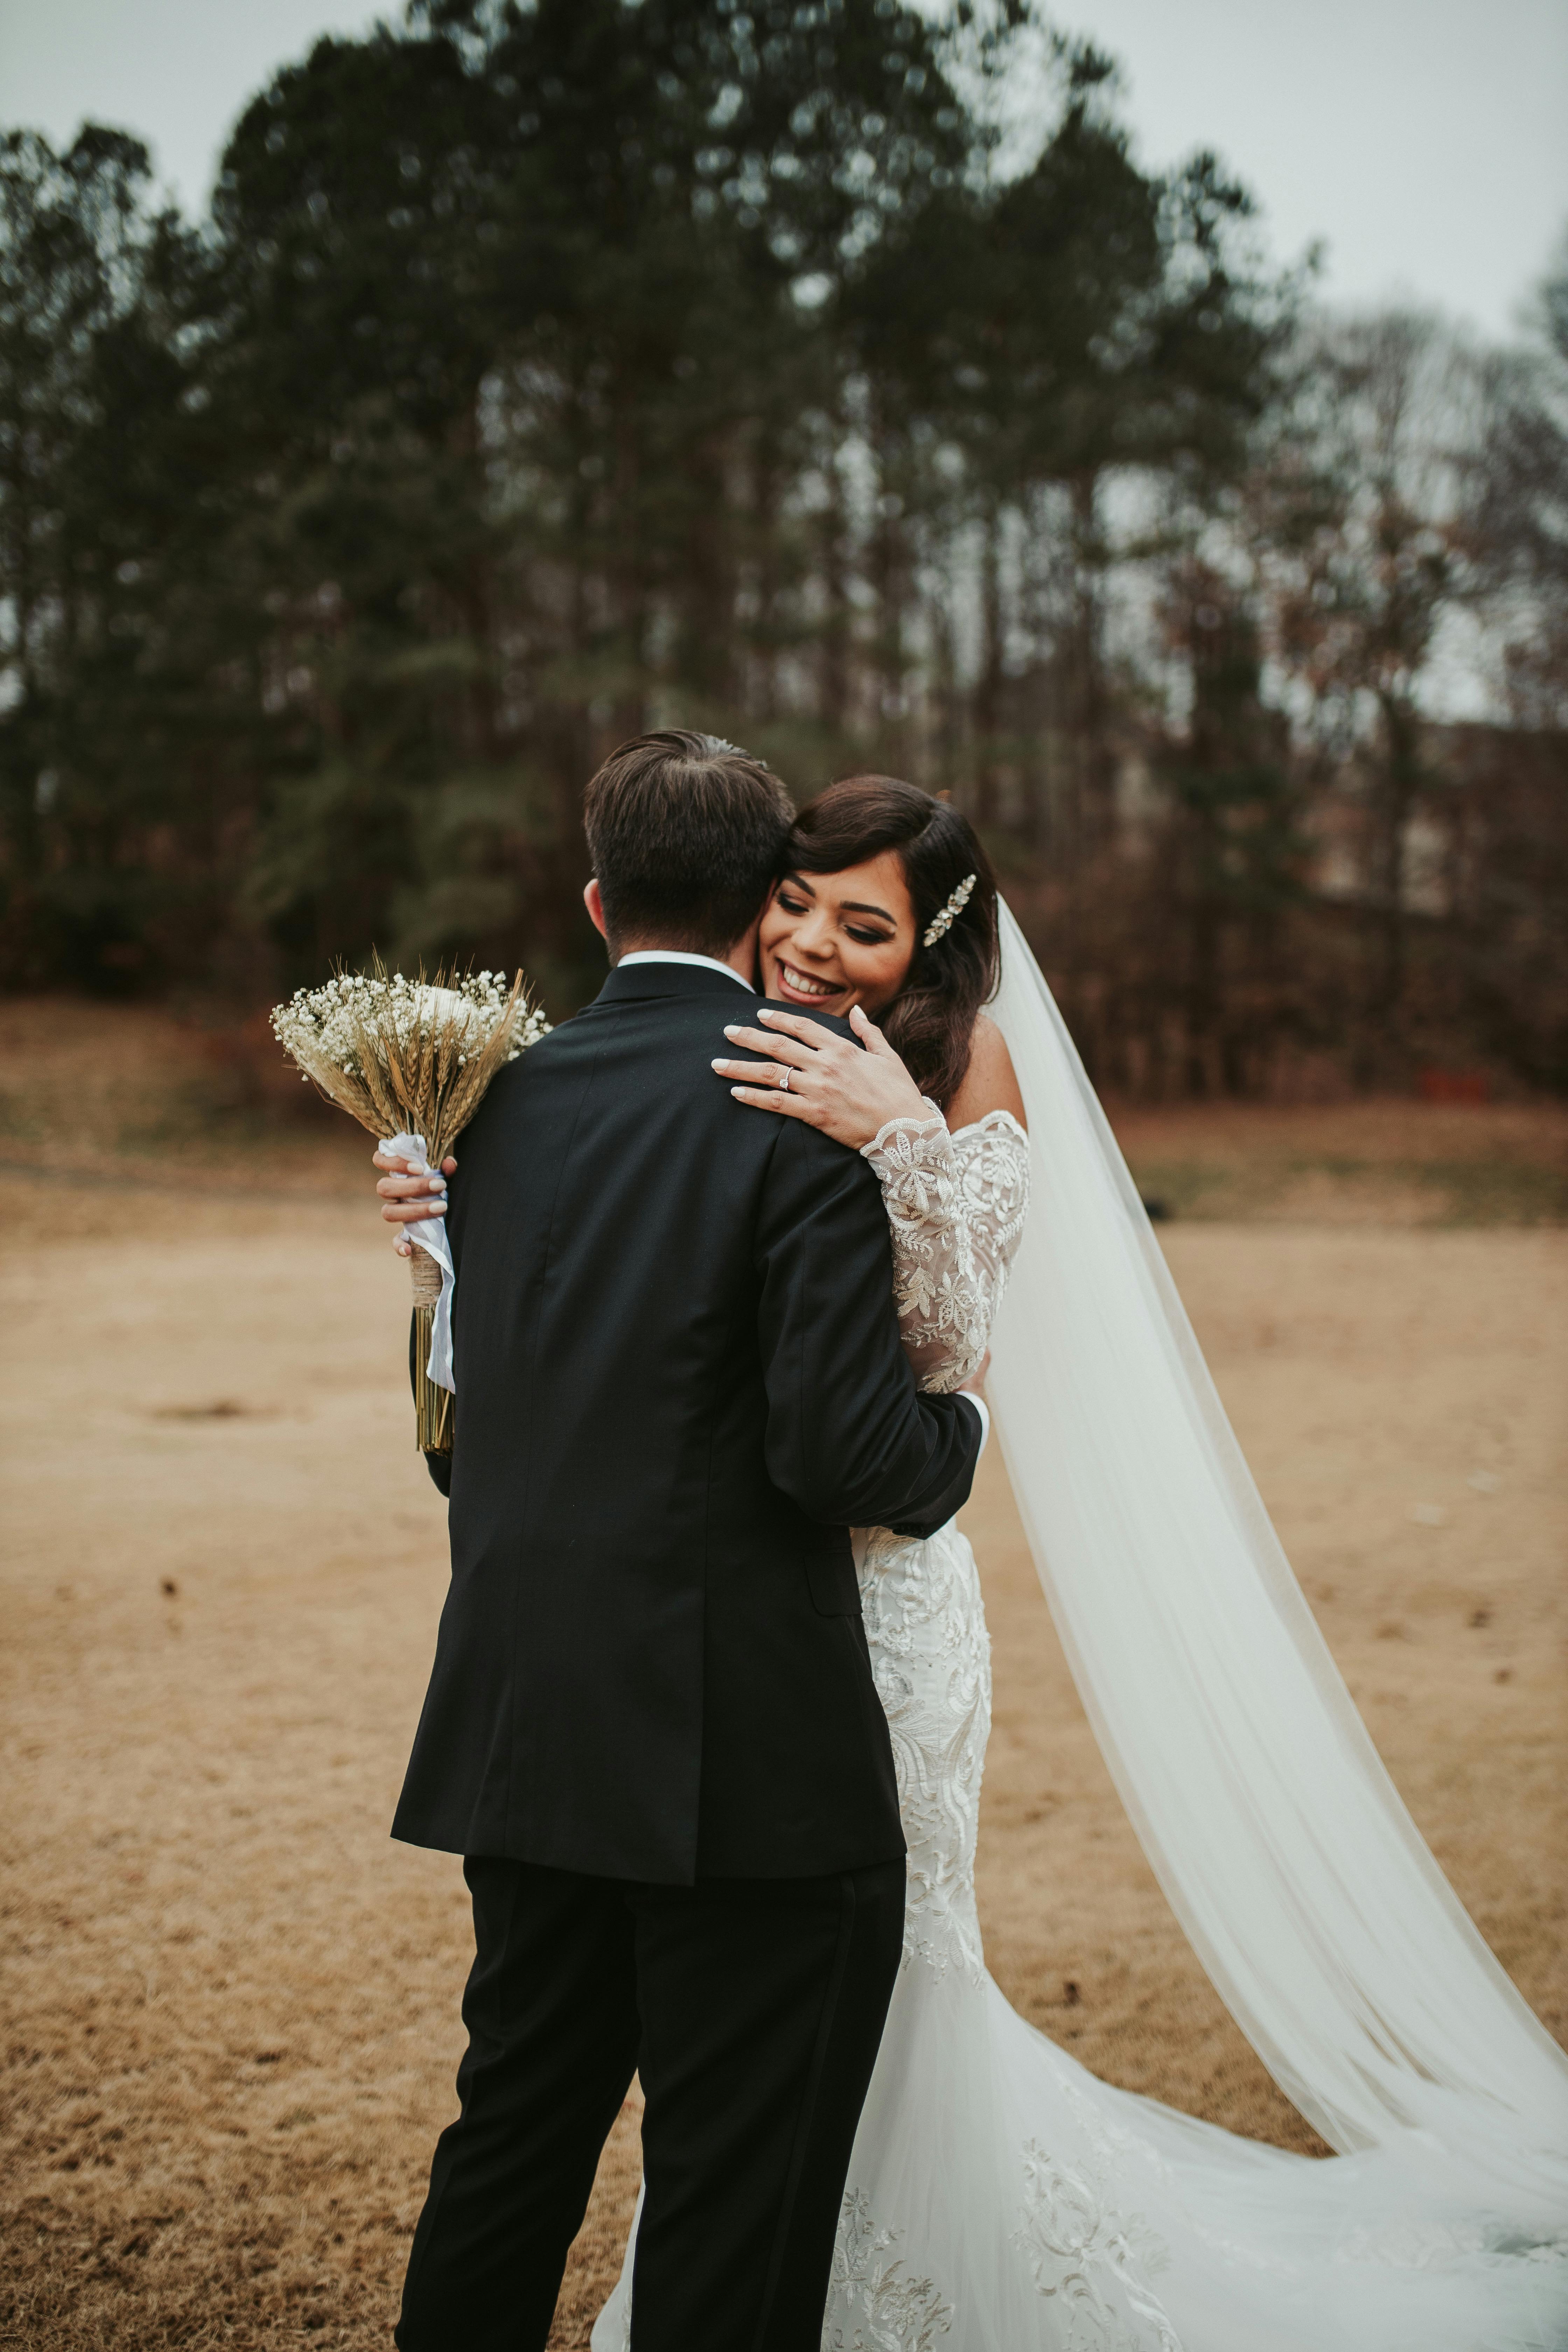 Une mariée serrant un homme dans ses bras le jour de son mariage | Source : Pexels